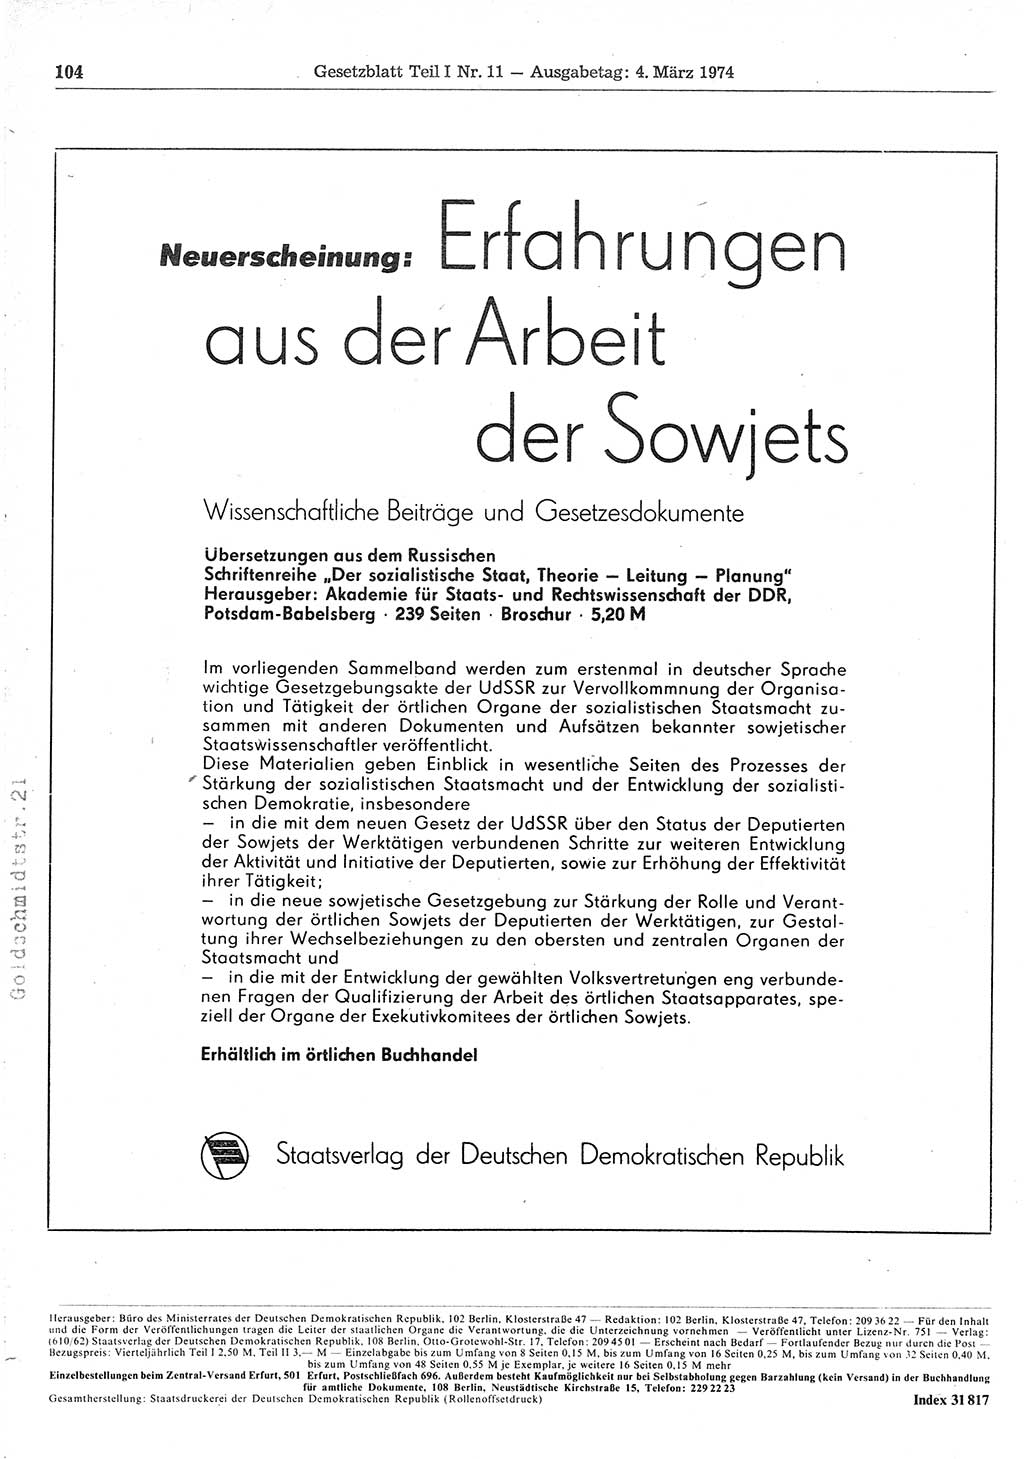 Gesetzblatt (GBl.) der Deutschen Demokratischen Republik (DDR) Teil Ⅰ 1974, Seite 104 (GBl. DDR Ⅰ 1974, S. 104)